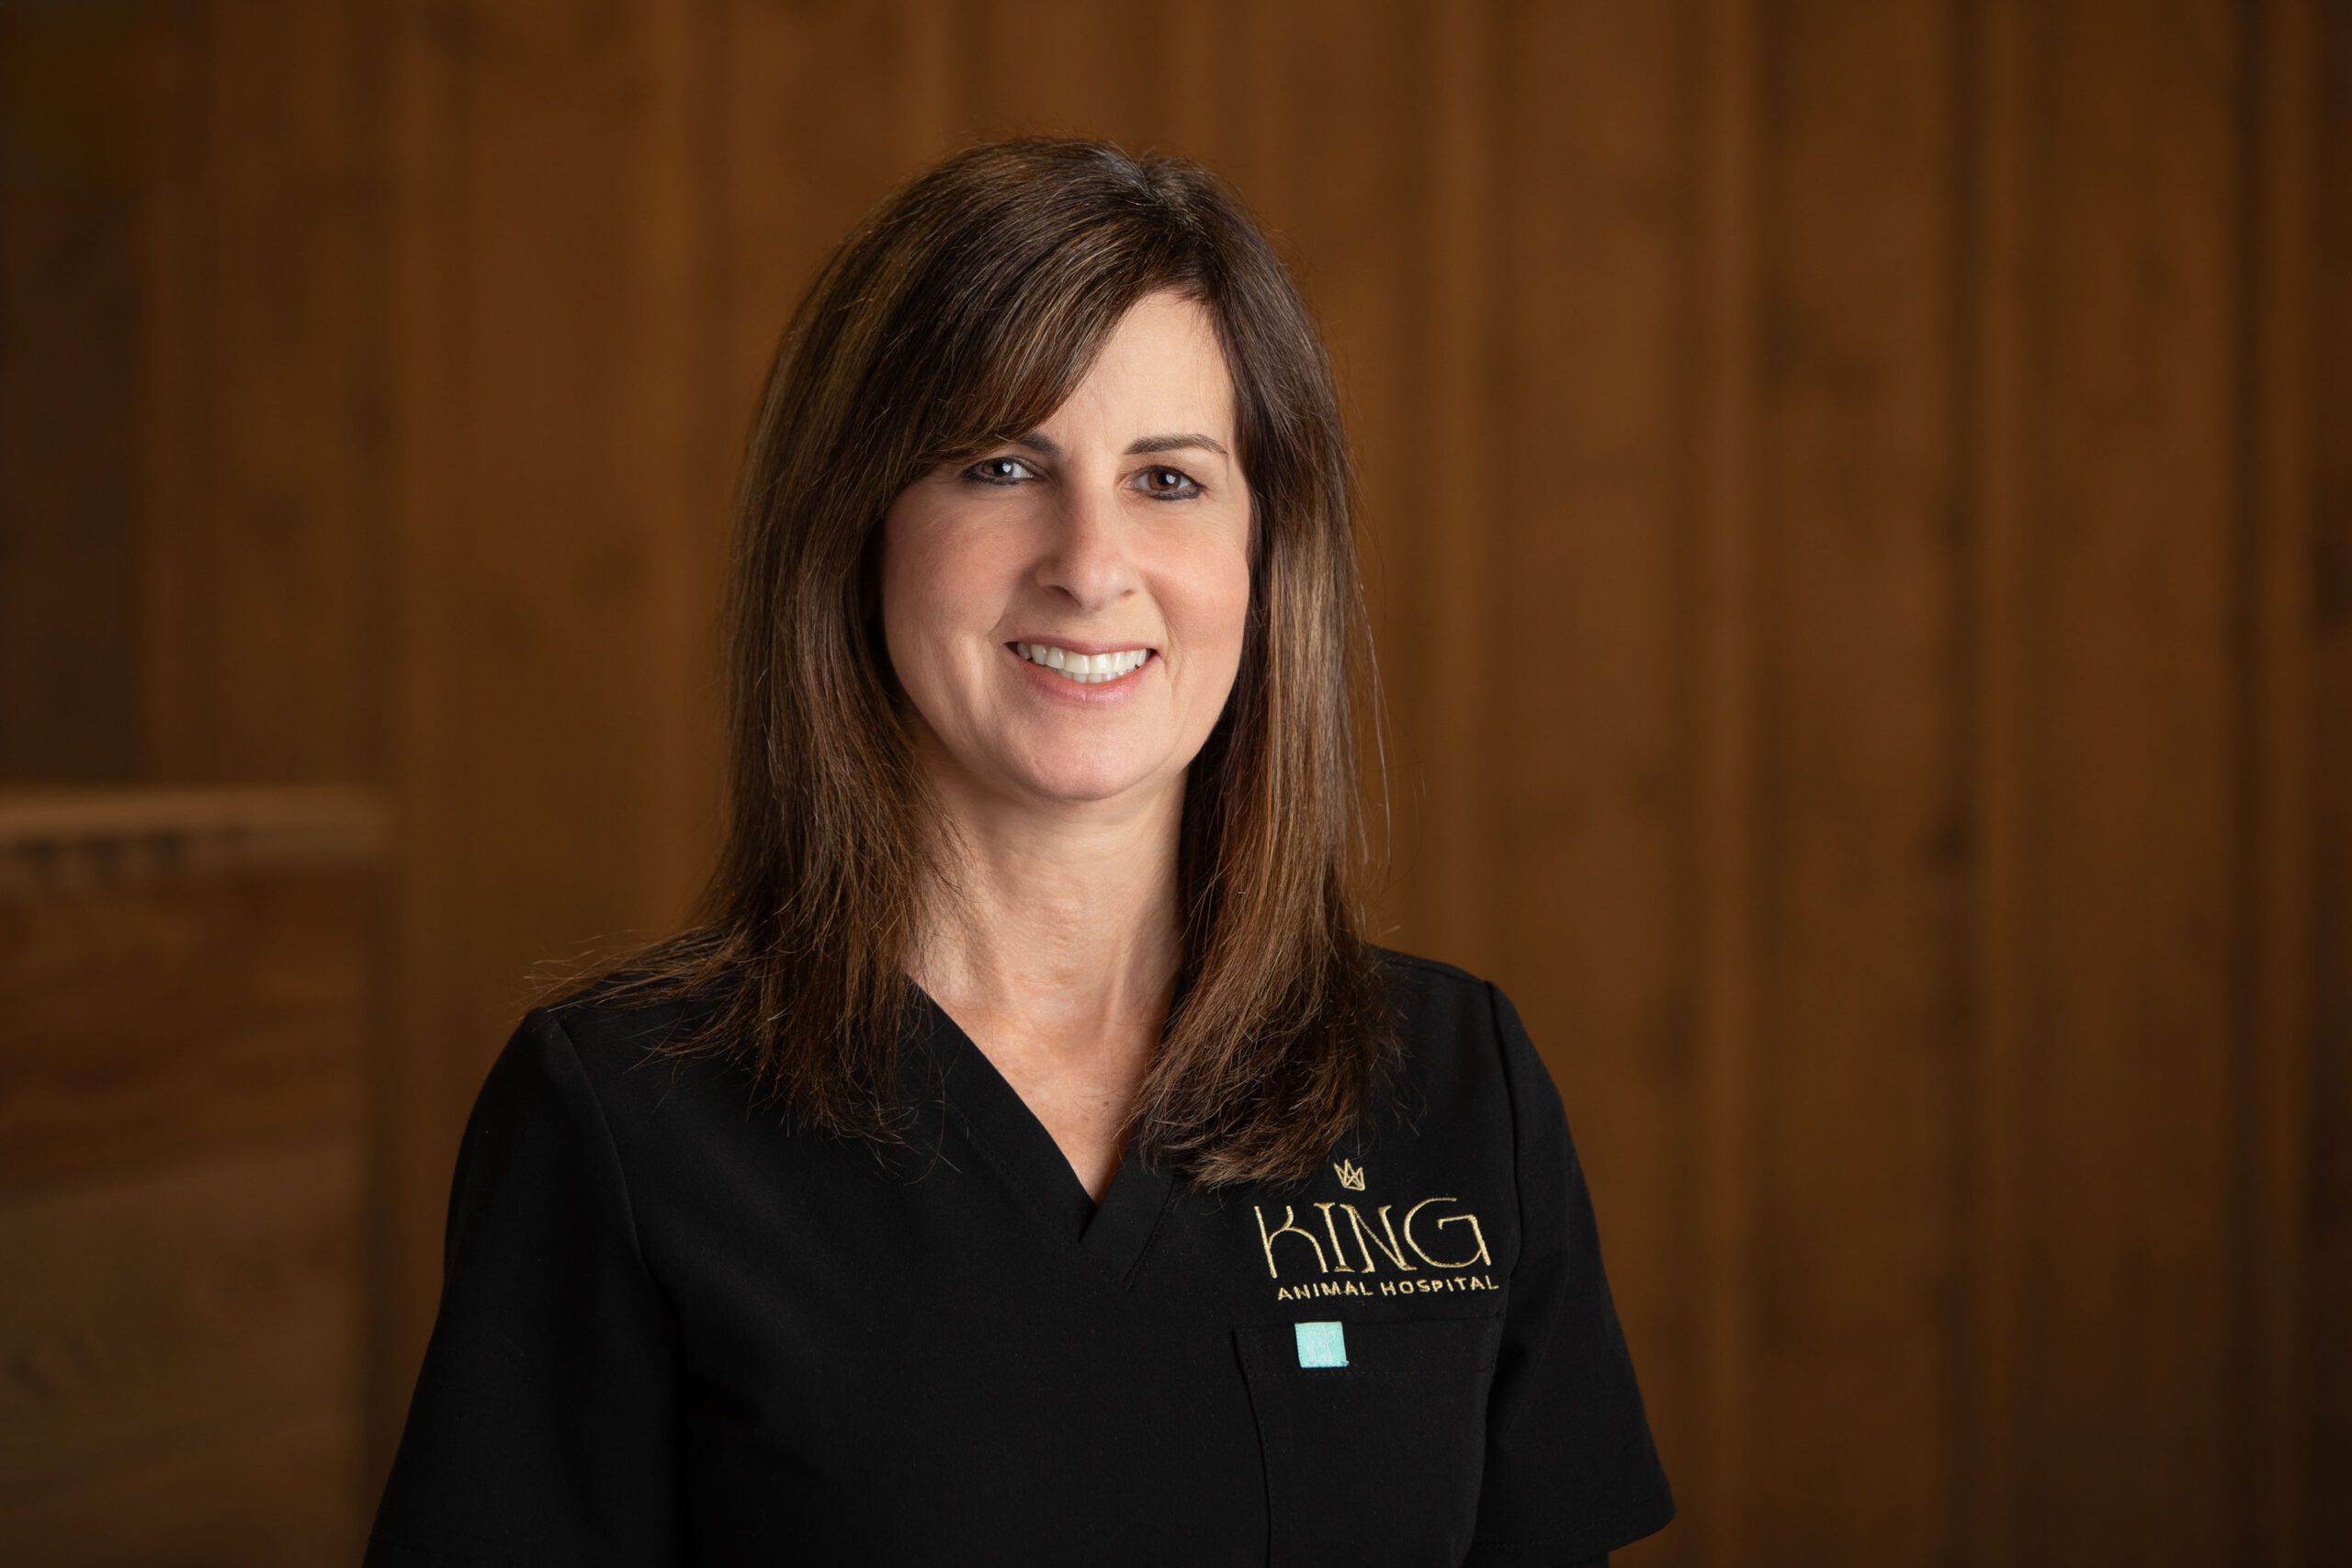 Dr. Karri Beck, BSc, DVM, DACVD, joins King Animal Hospital